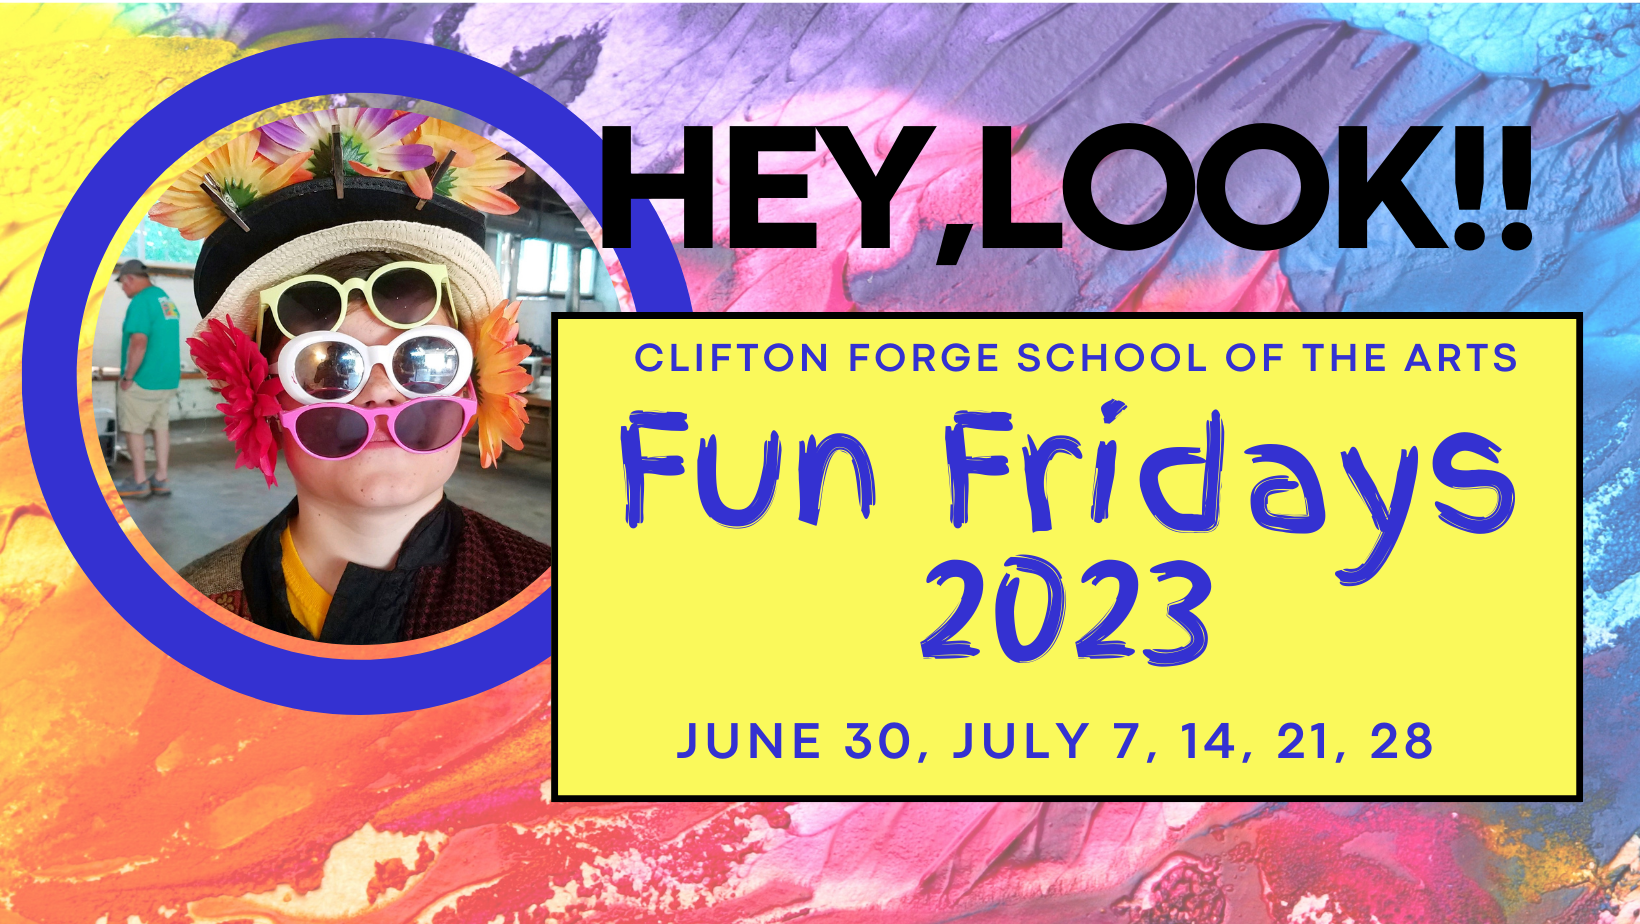 Fun Fridays 2023 (Facebook Cover)